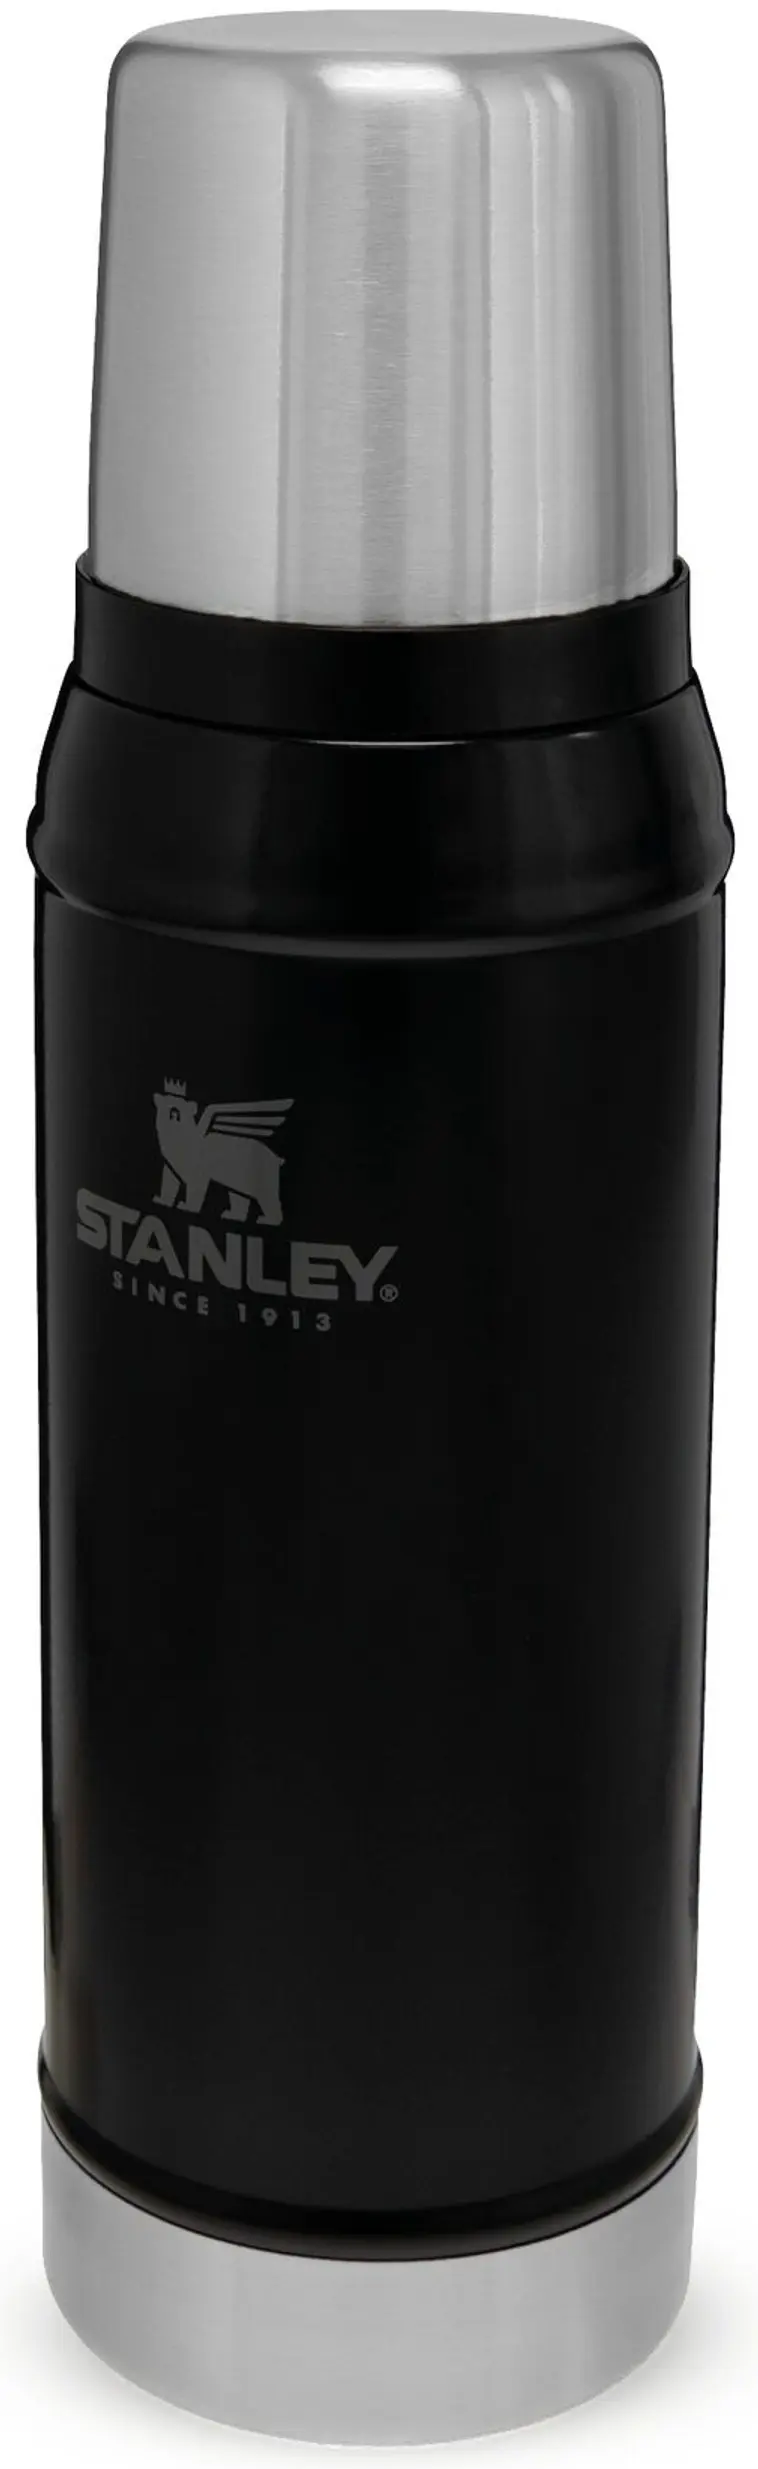 Stanley termospullo classic musta 0,7l